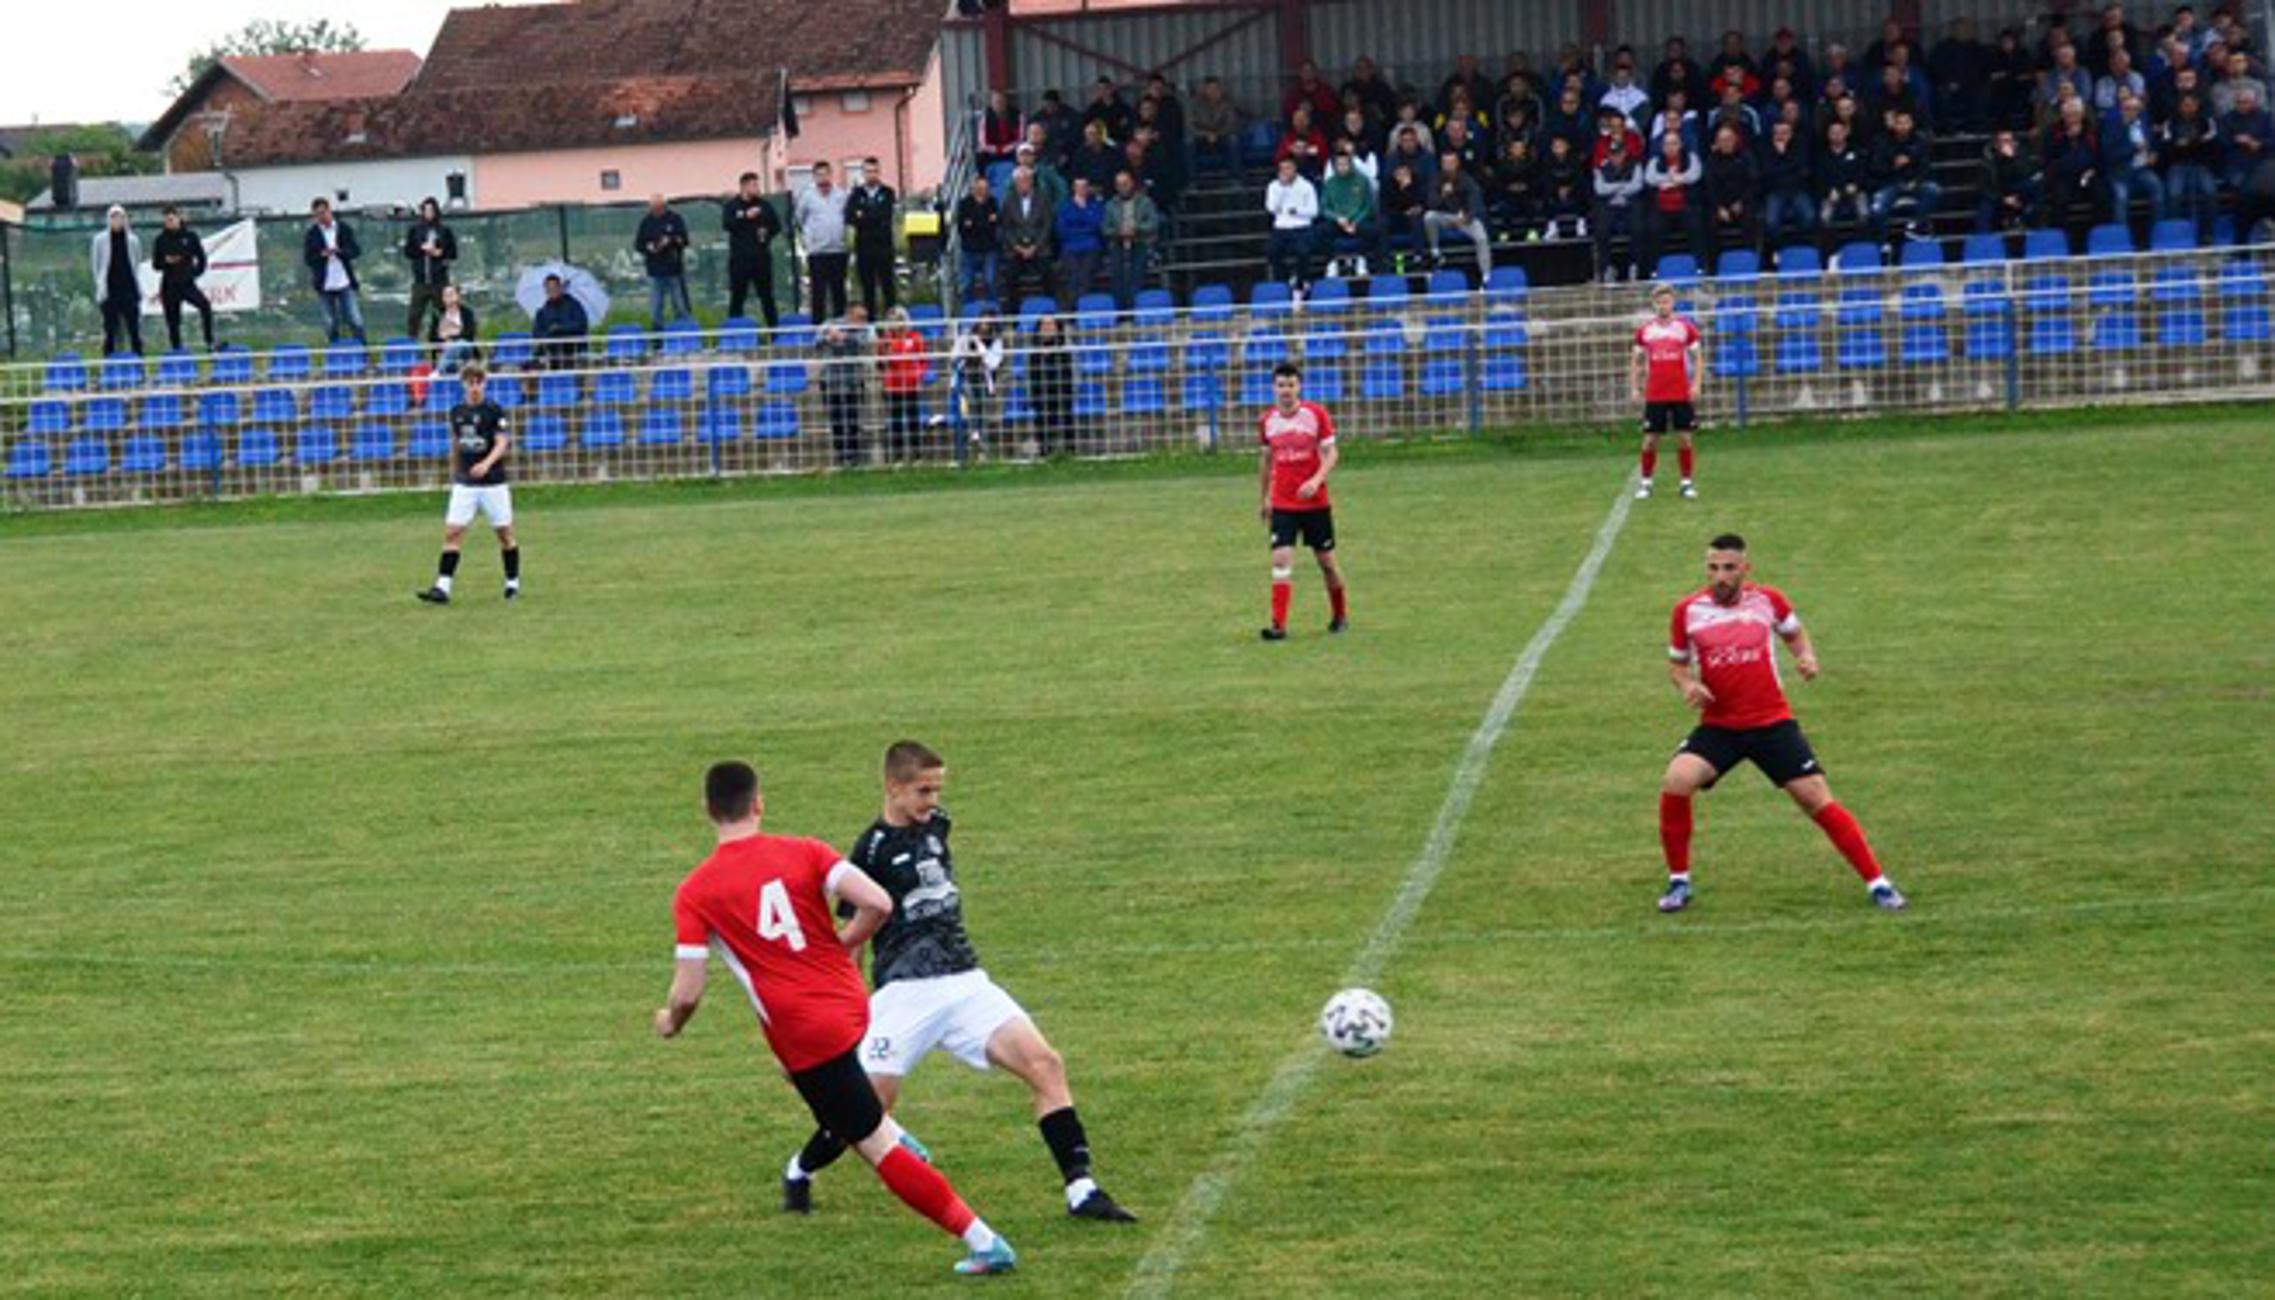 Slavonac i Marsonia će u srijedu odmjeriti snage u finalu županijskog kupa.